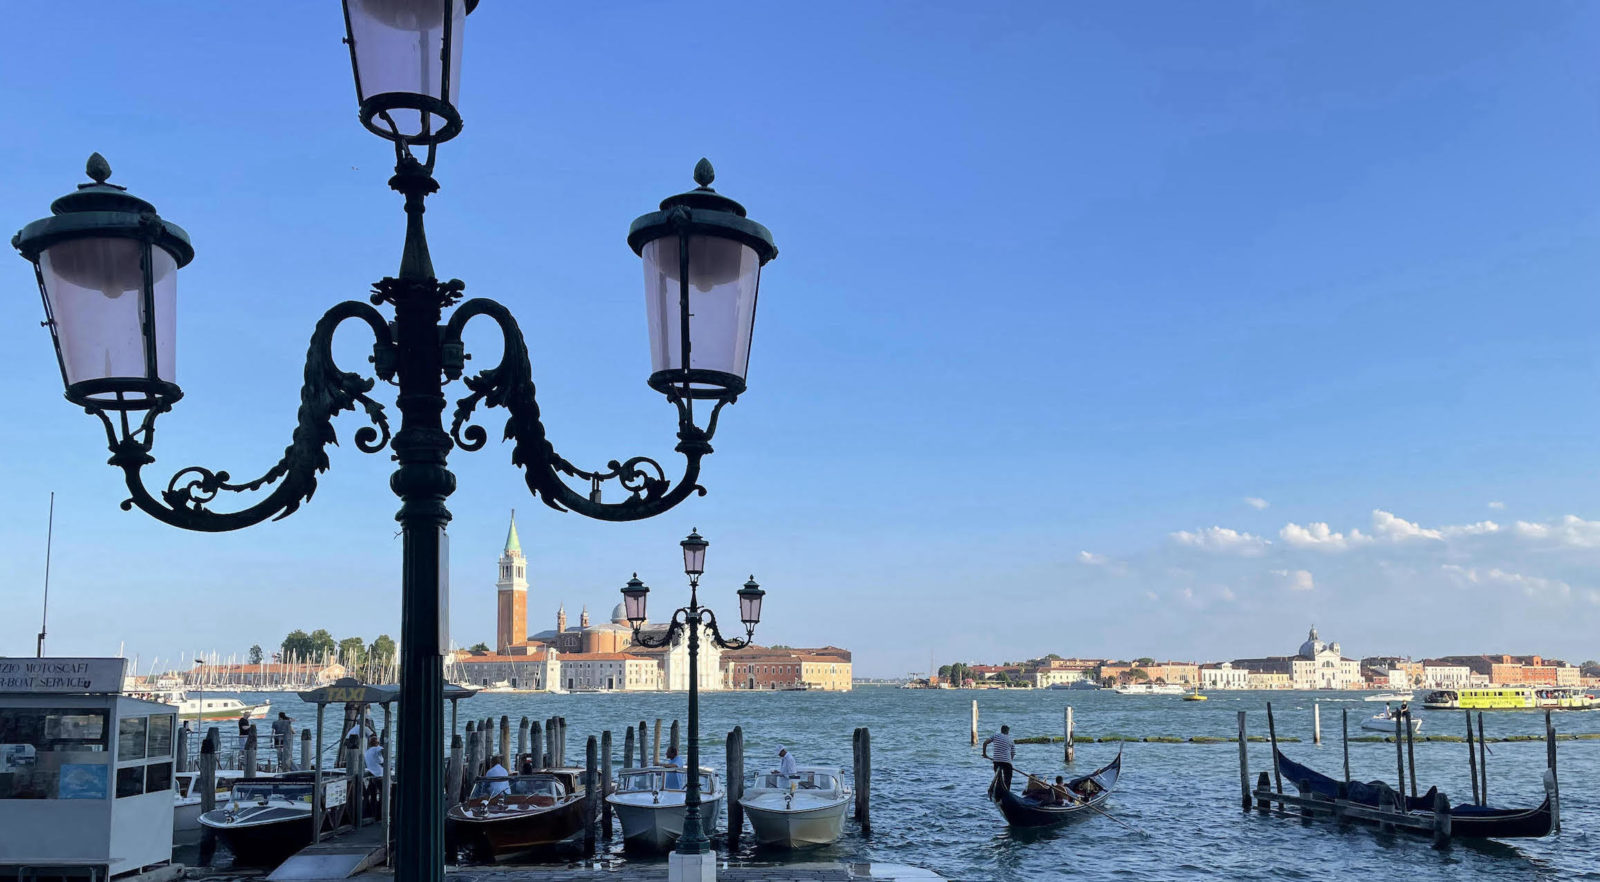 Vue de Venise depuis la place saint marc